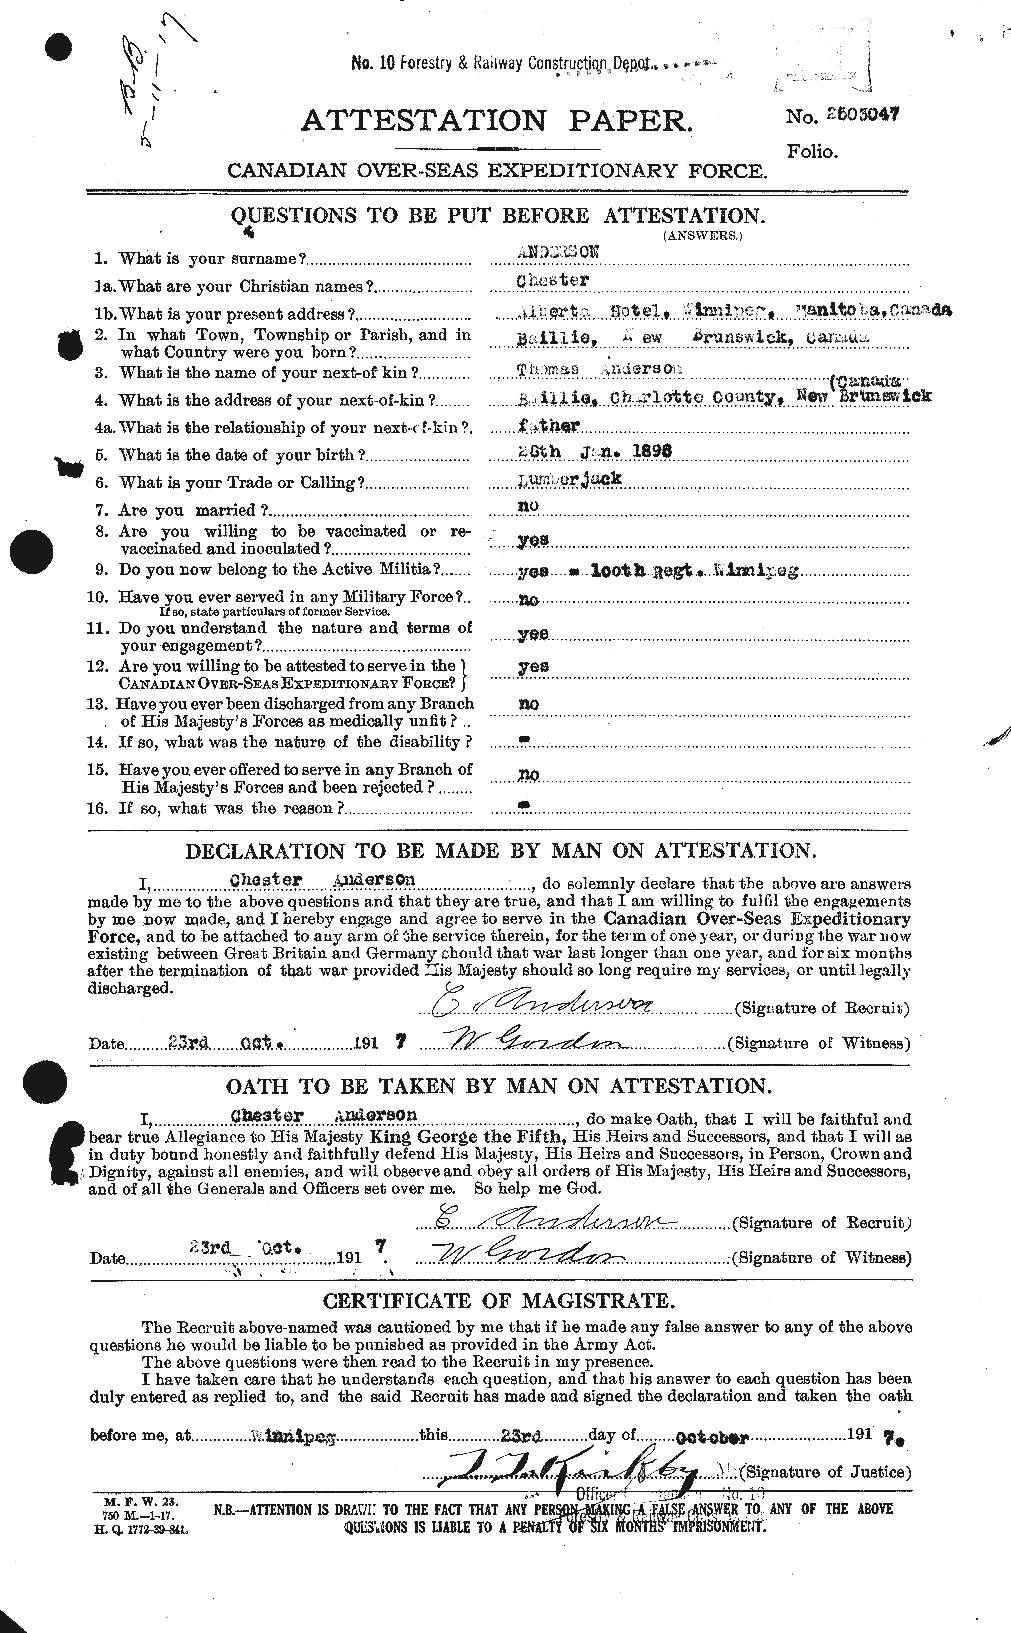 Dossiers du Personnel de la Première Guerre mondiale - CEC 209214a